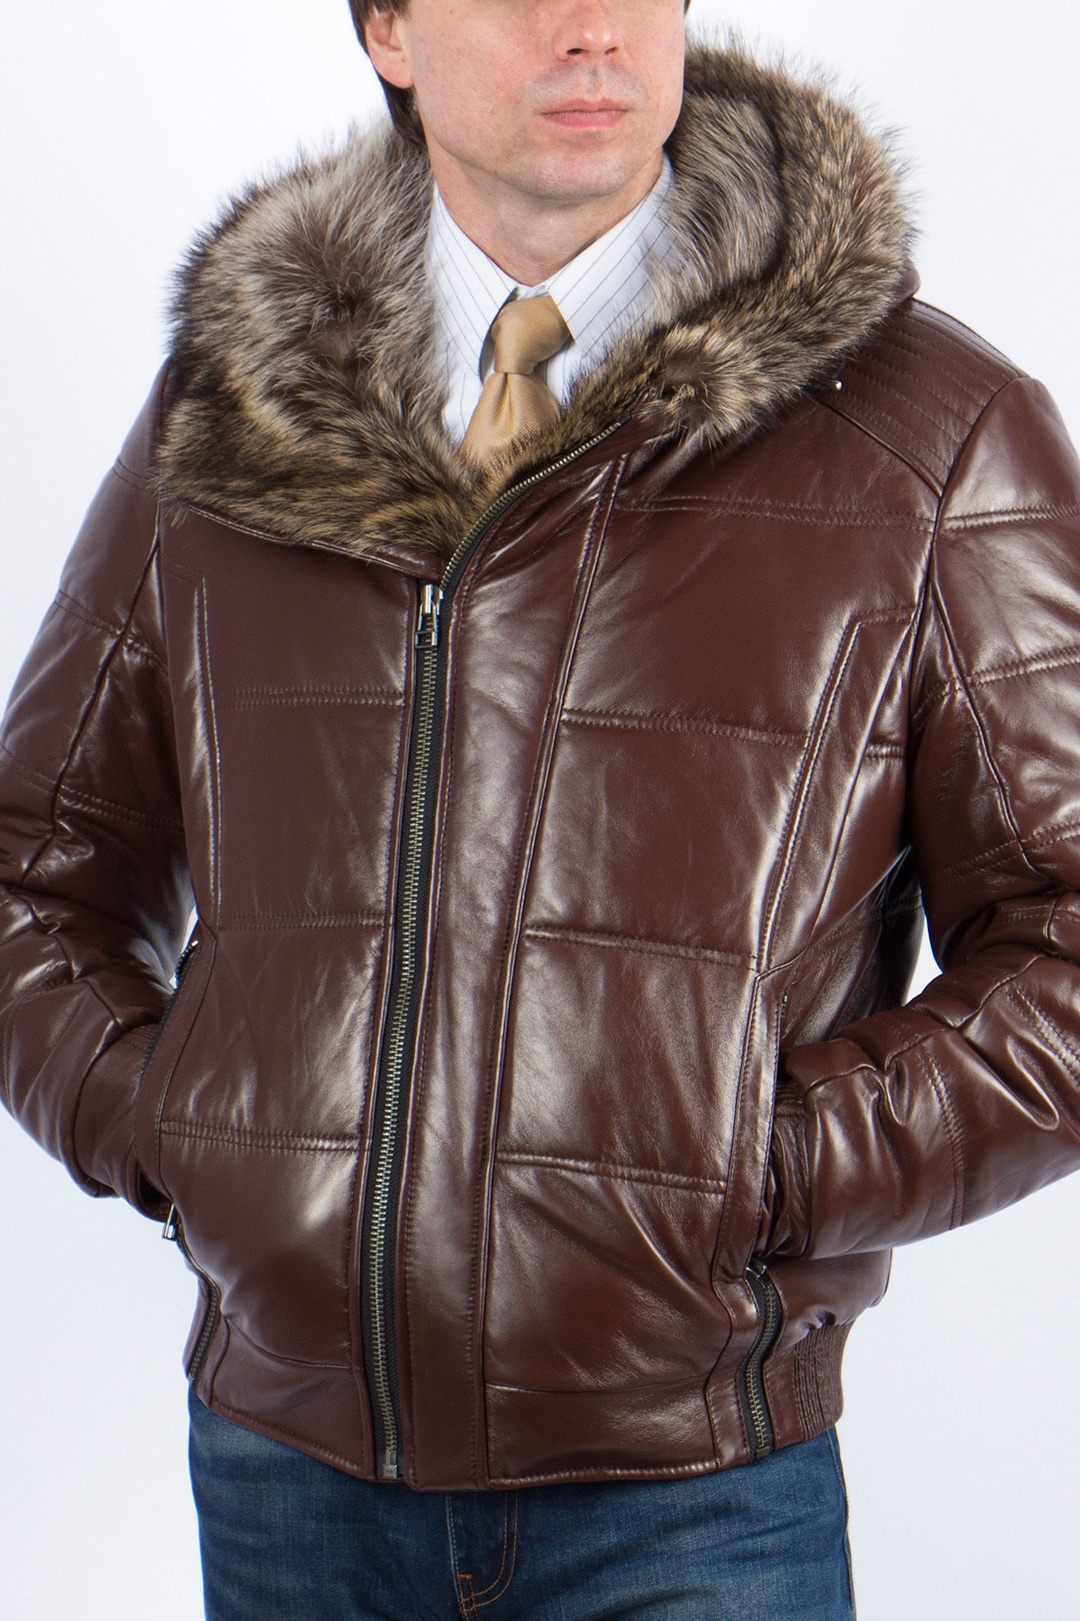 Куртка волки мужская. Куртка Херман кожаная с мехом волка. Francesco Galli куртка с мехом волка. Мужская кожаная куртка с мехом волка Galliano. Кожаная куртка с волчьим мехом мужская.